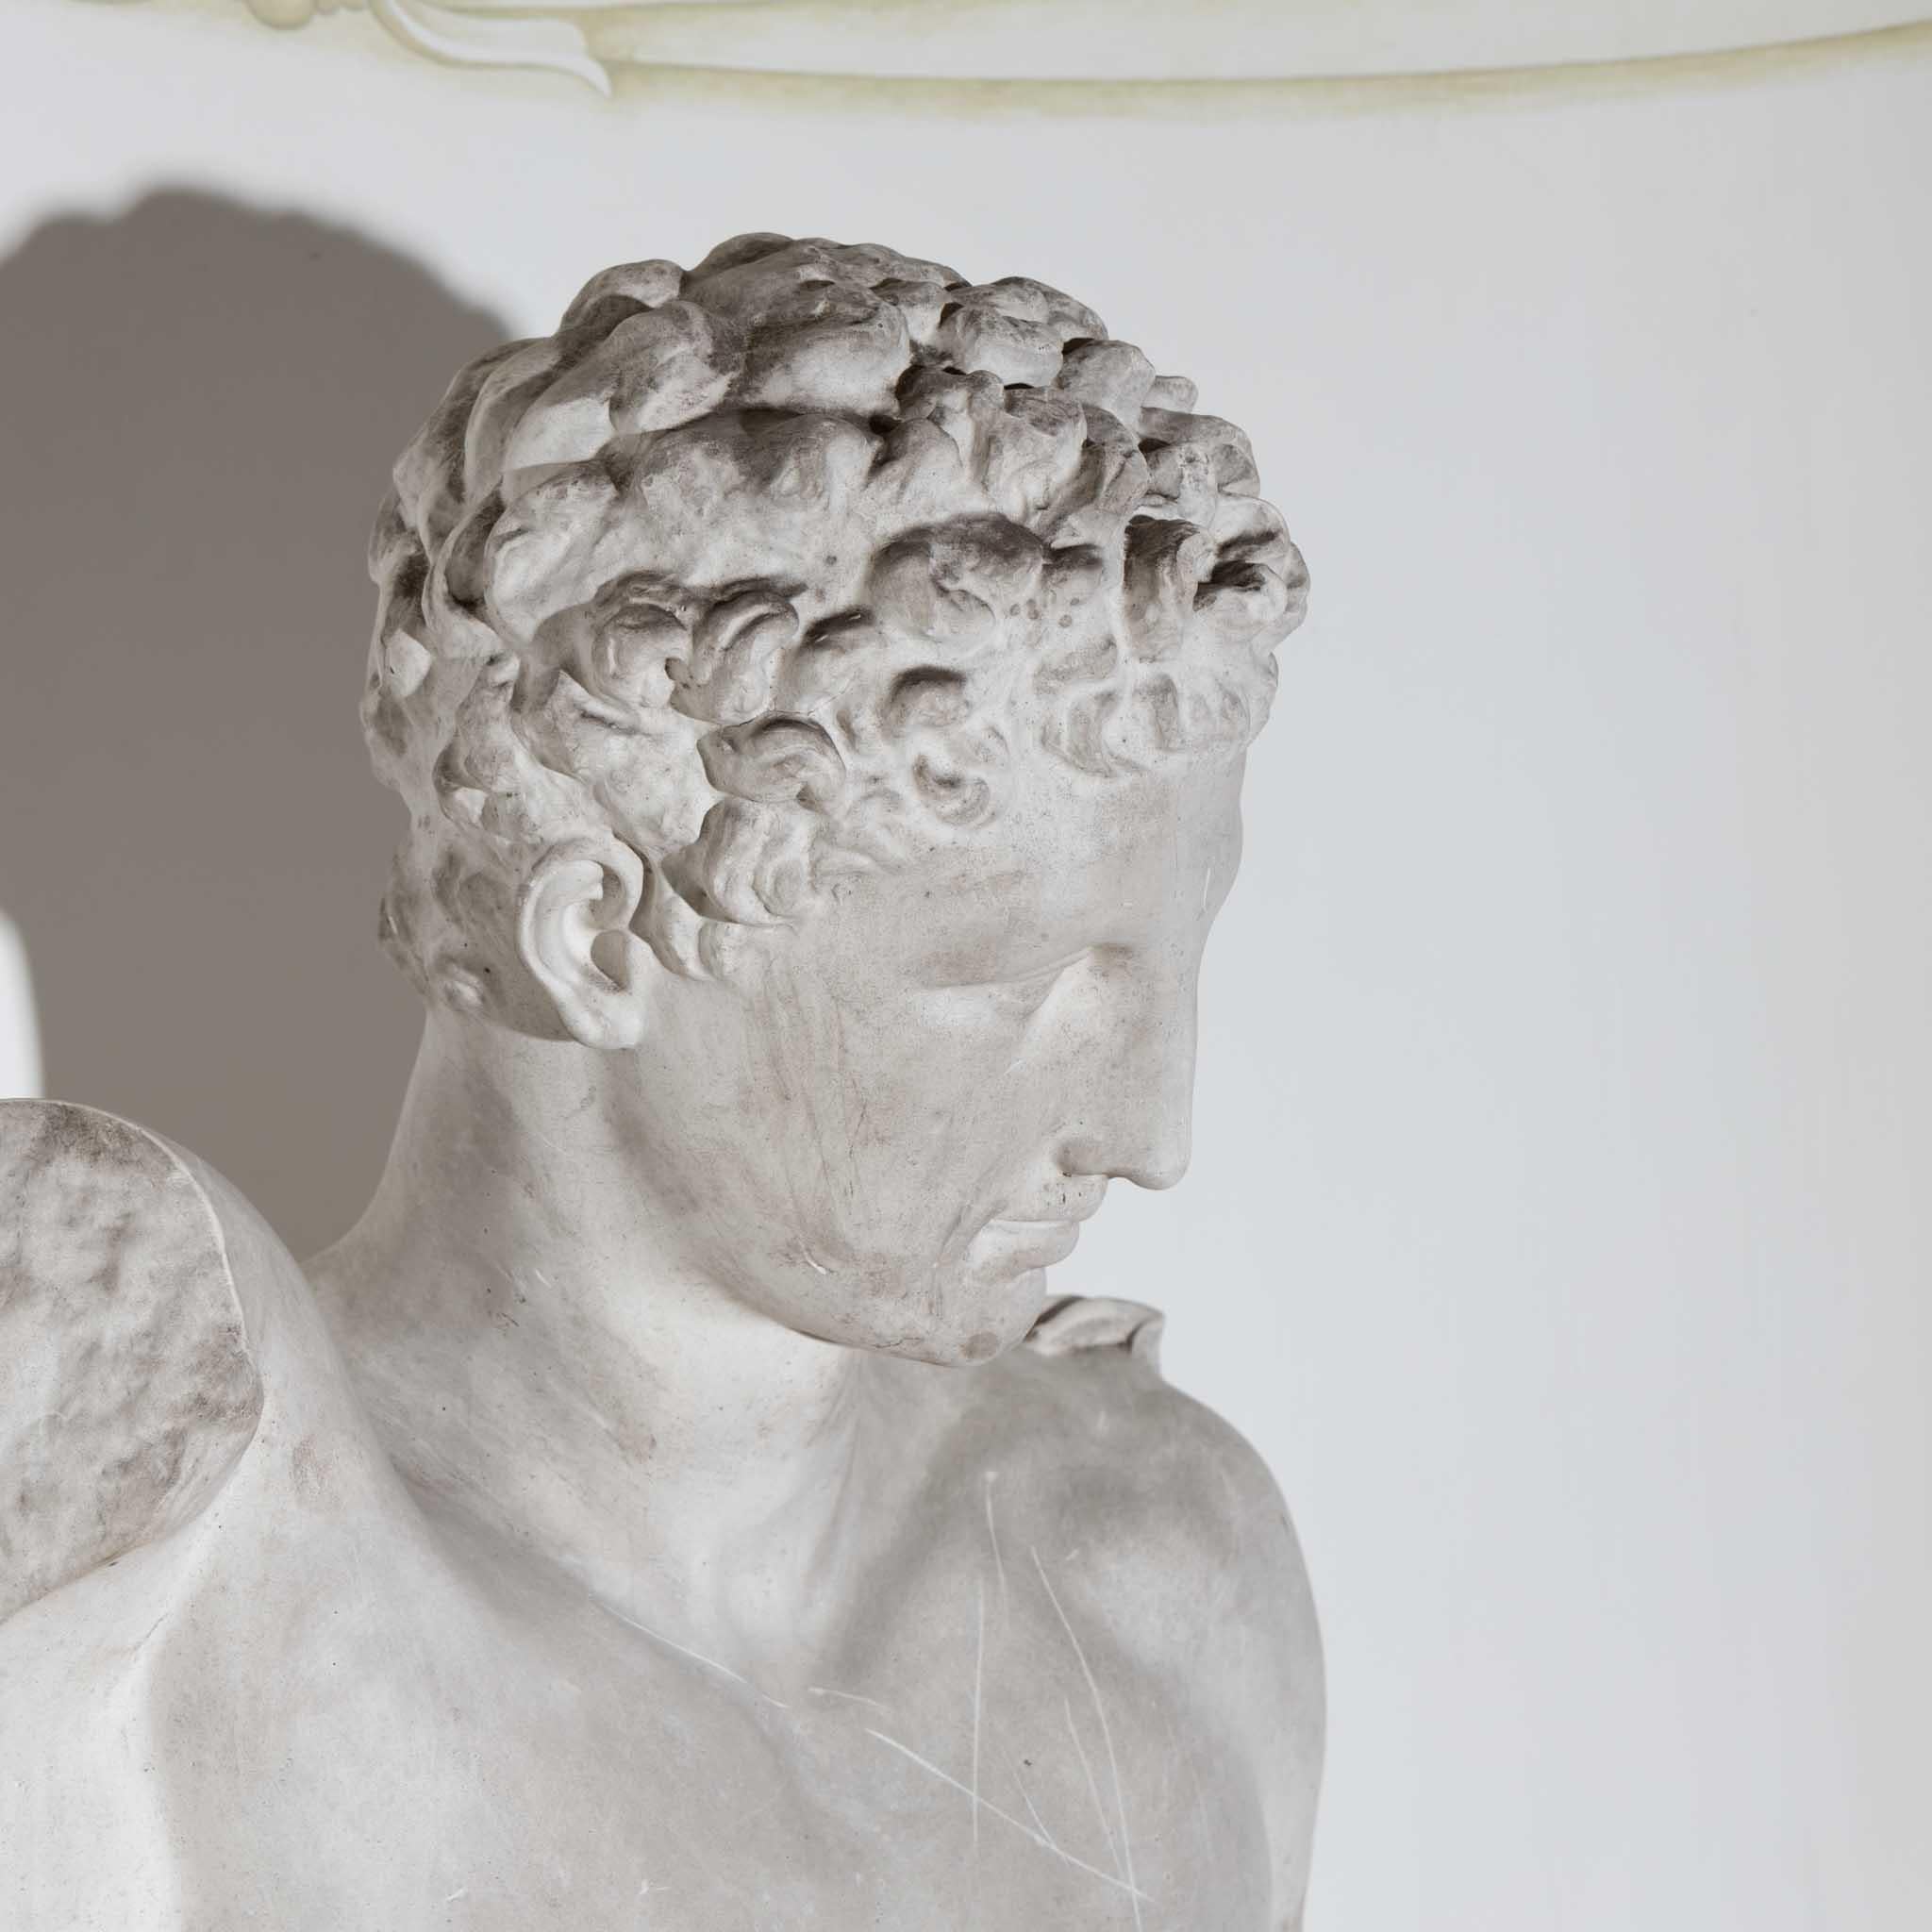 Gipsbüste des Hermes von Olympia, deren Original sich im Museum von Olympia befindet und dem Bildhauer Praxiteles zugeschrieben wird.